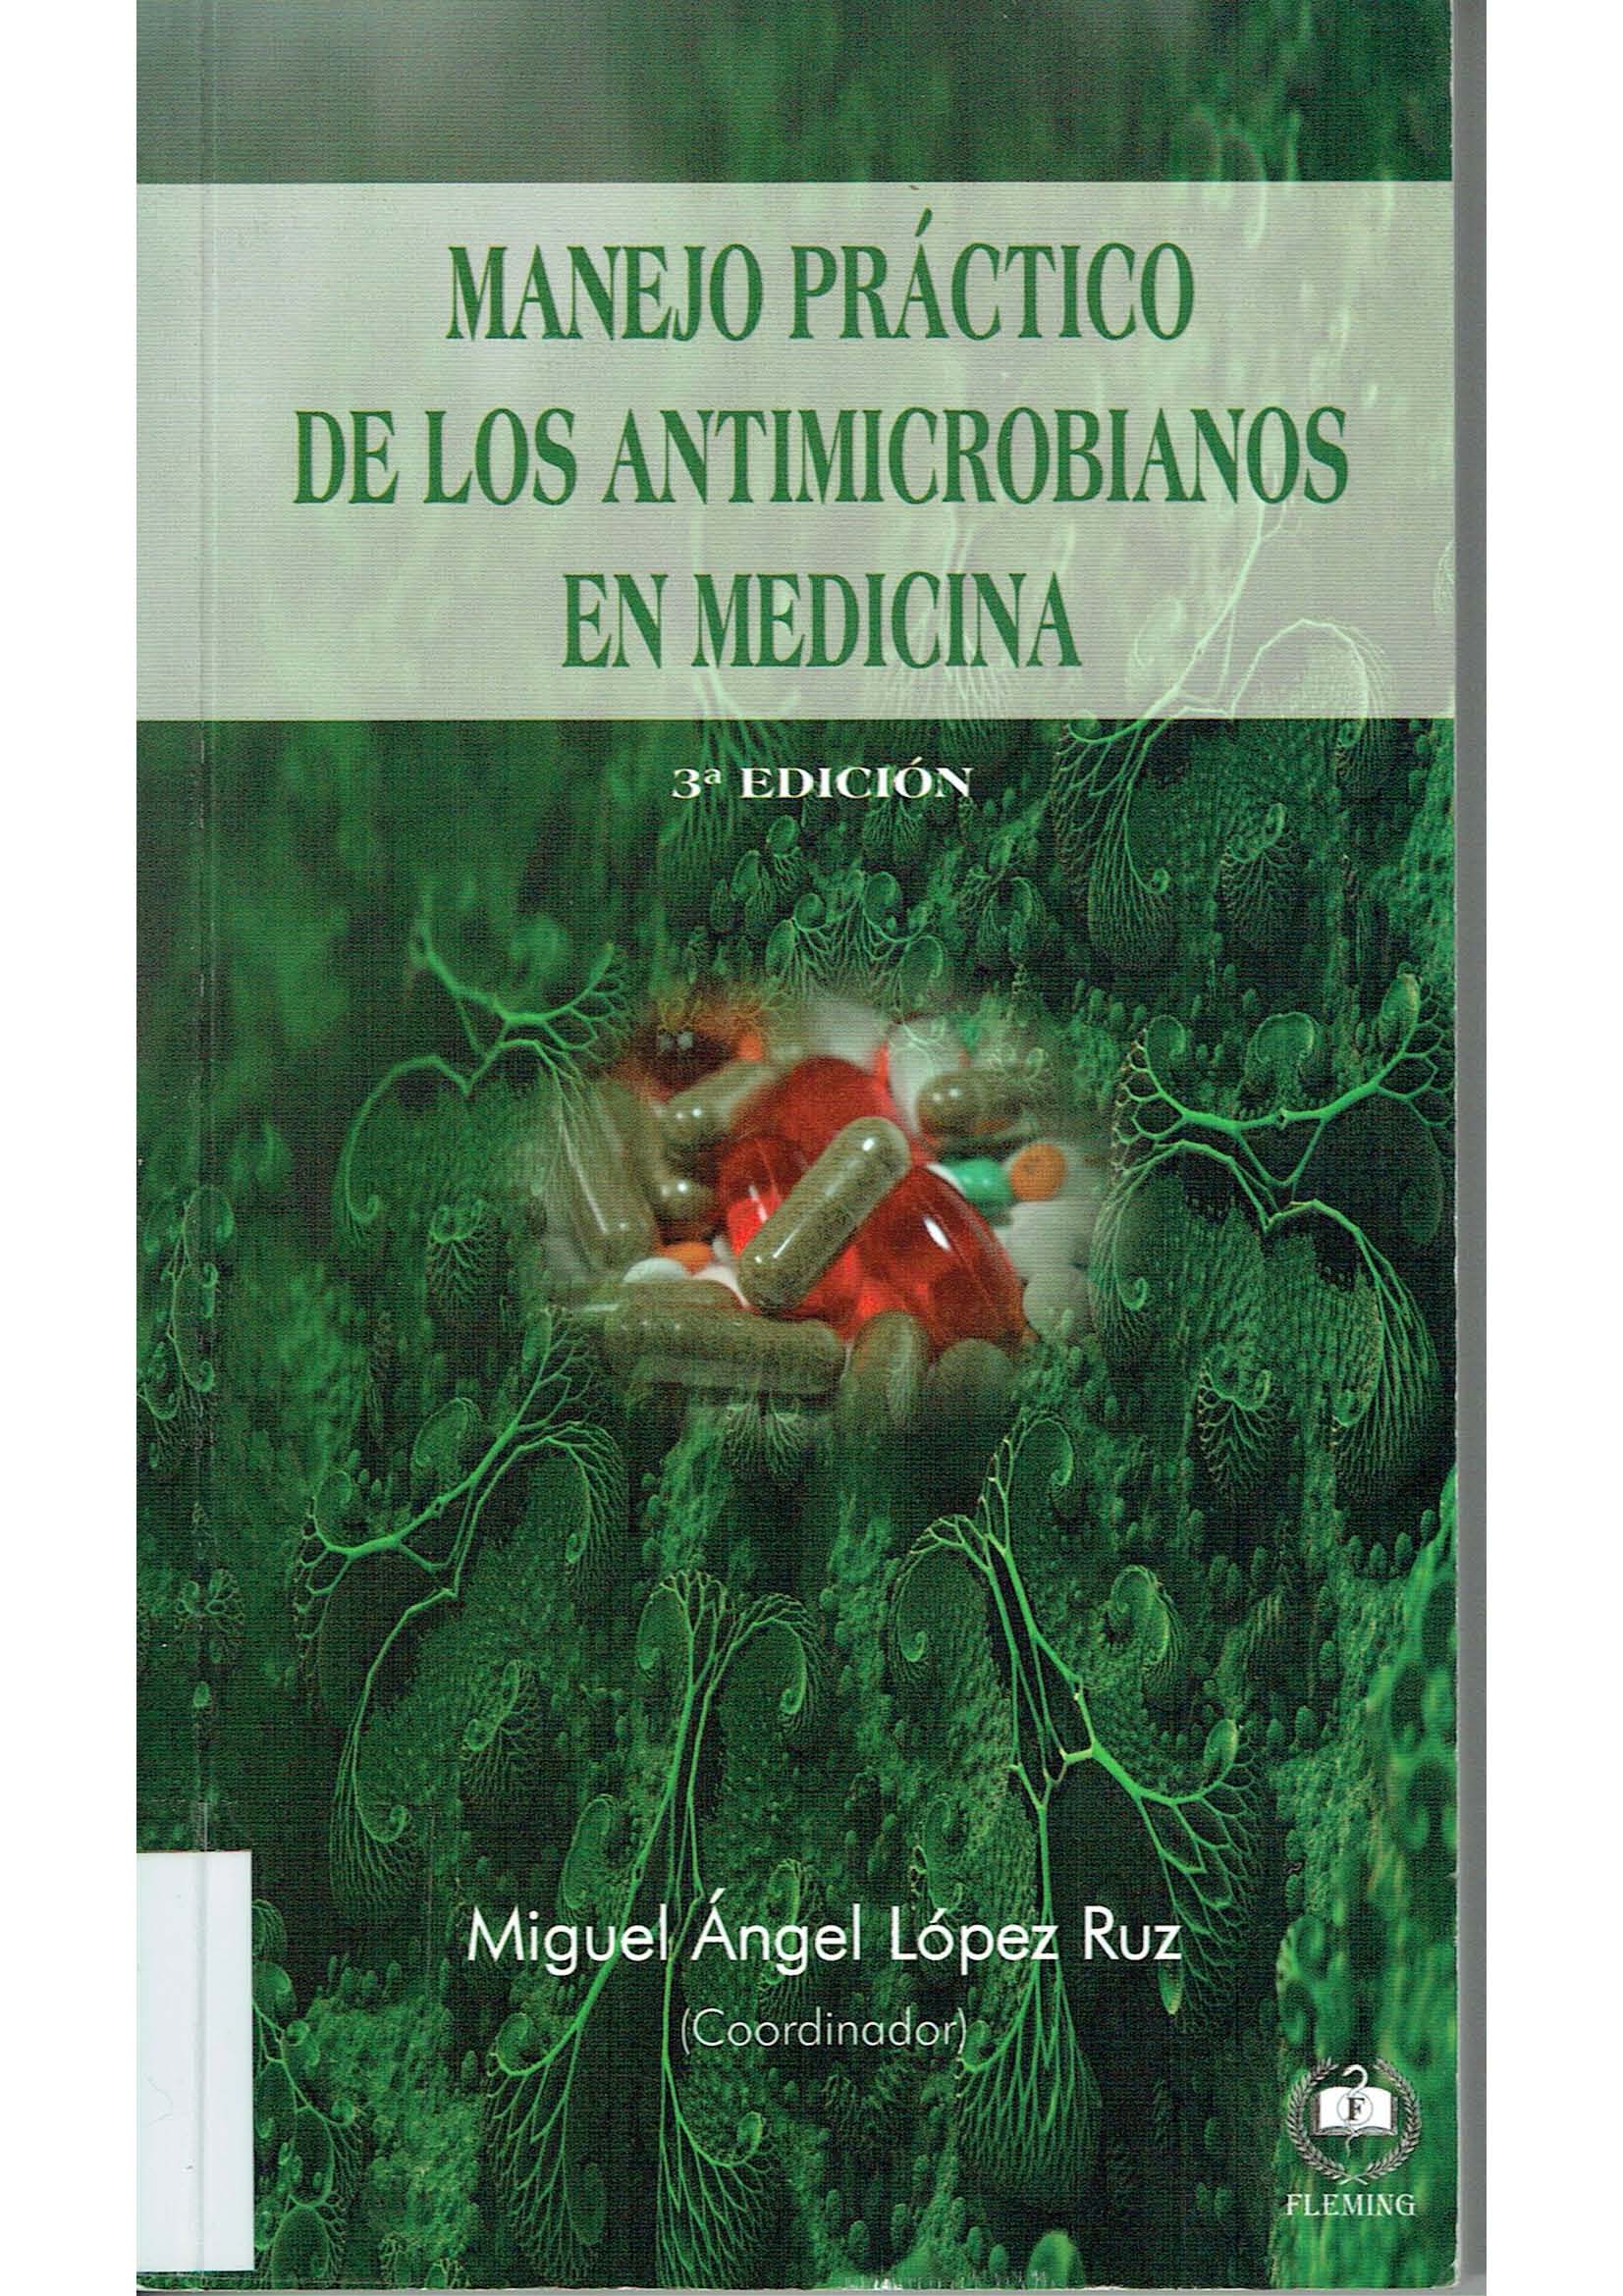 Imagen de portada del libro Manejo práctico de los antimicrobianos en medicina